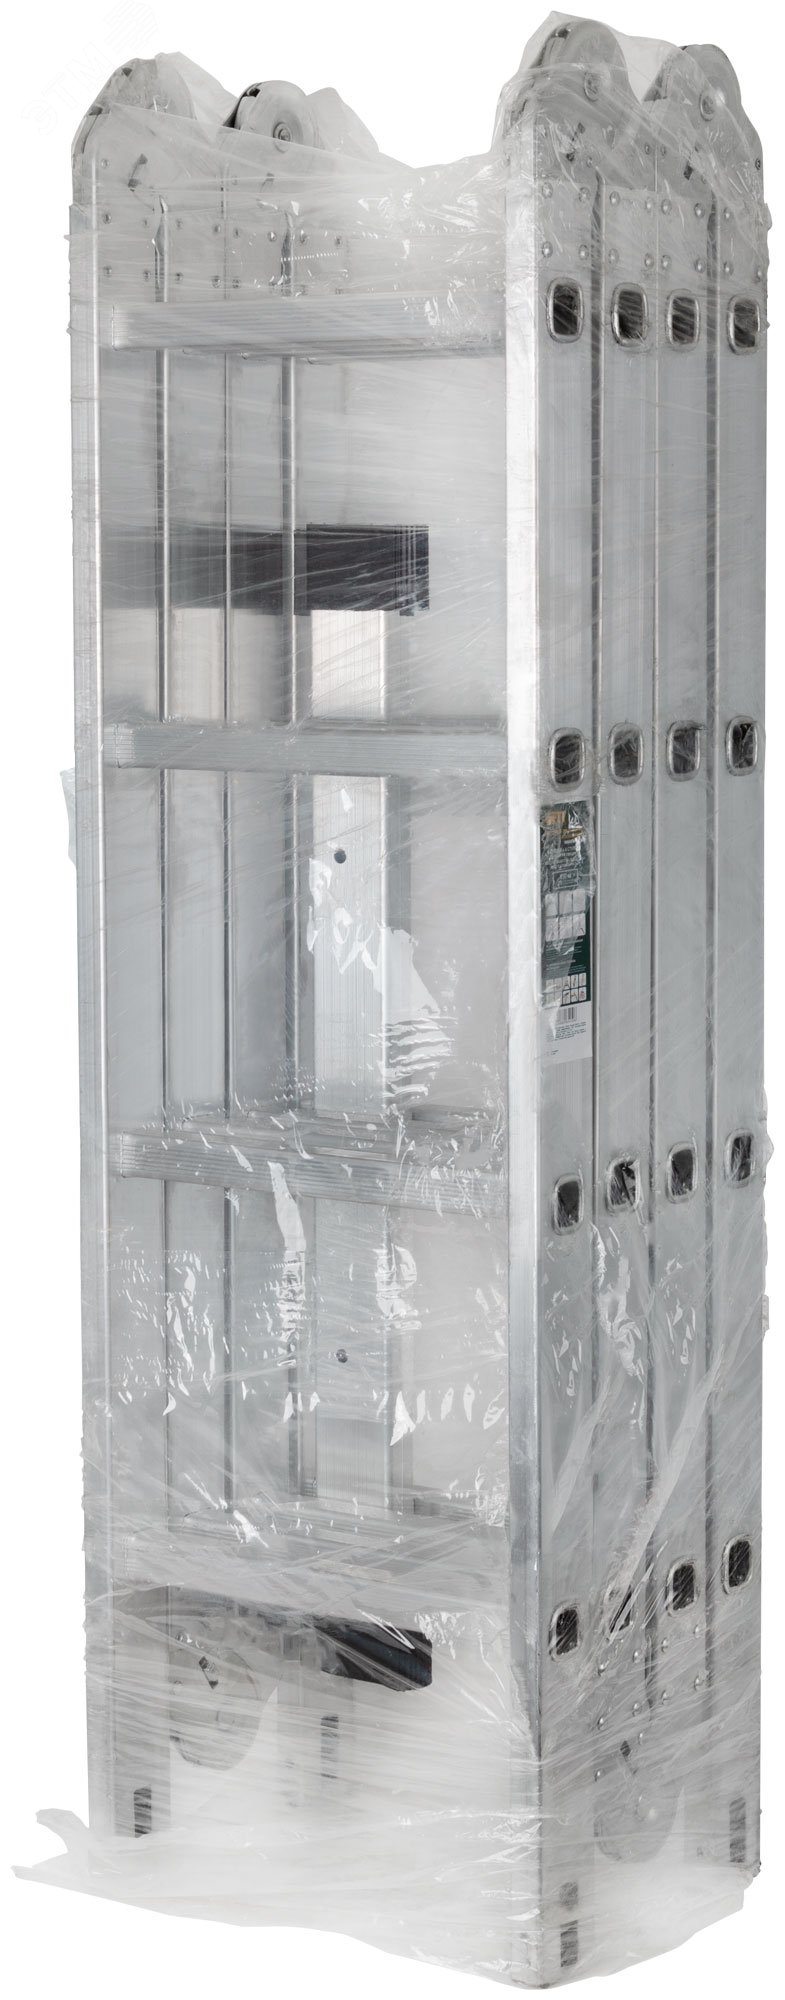 Лестница-трансформер алюминиевая, 4 секции х 4 ступени, вес 13.2 кг 65450 FIT РОС - превью 3